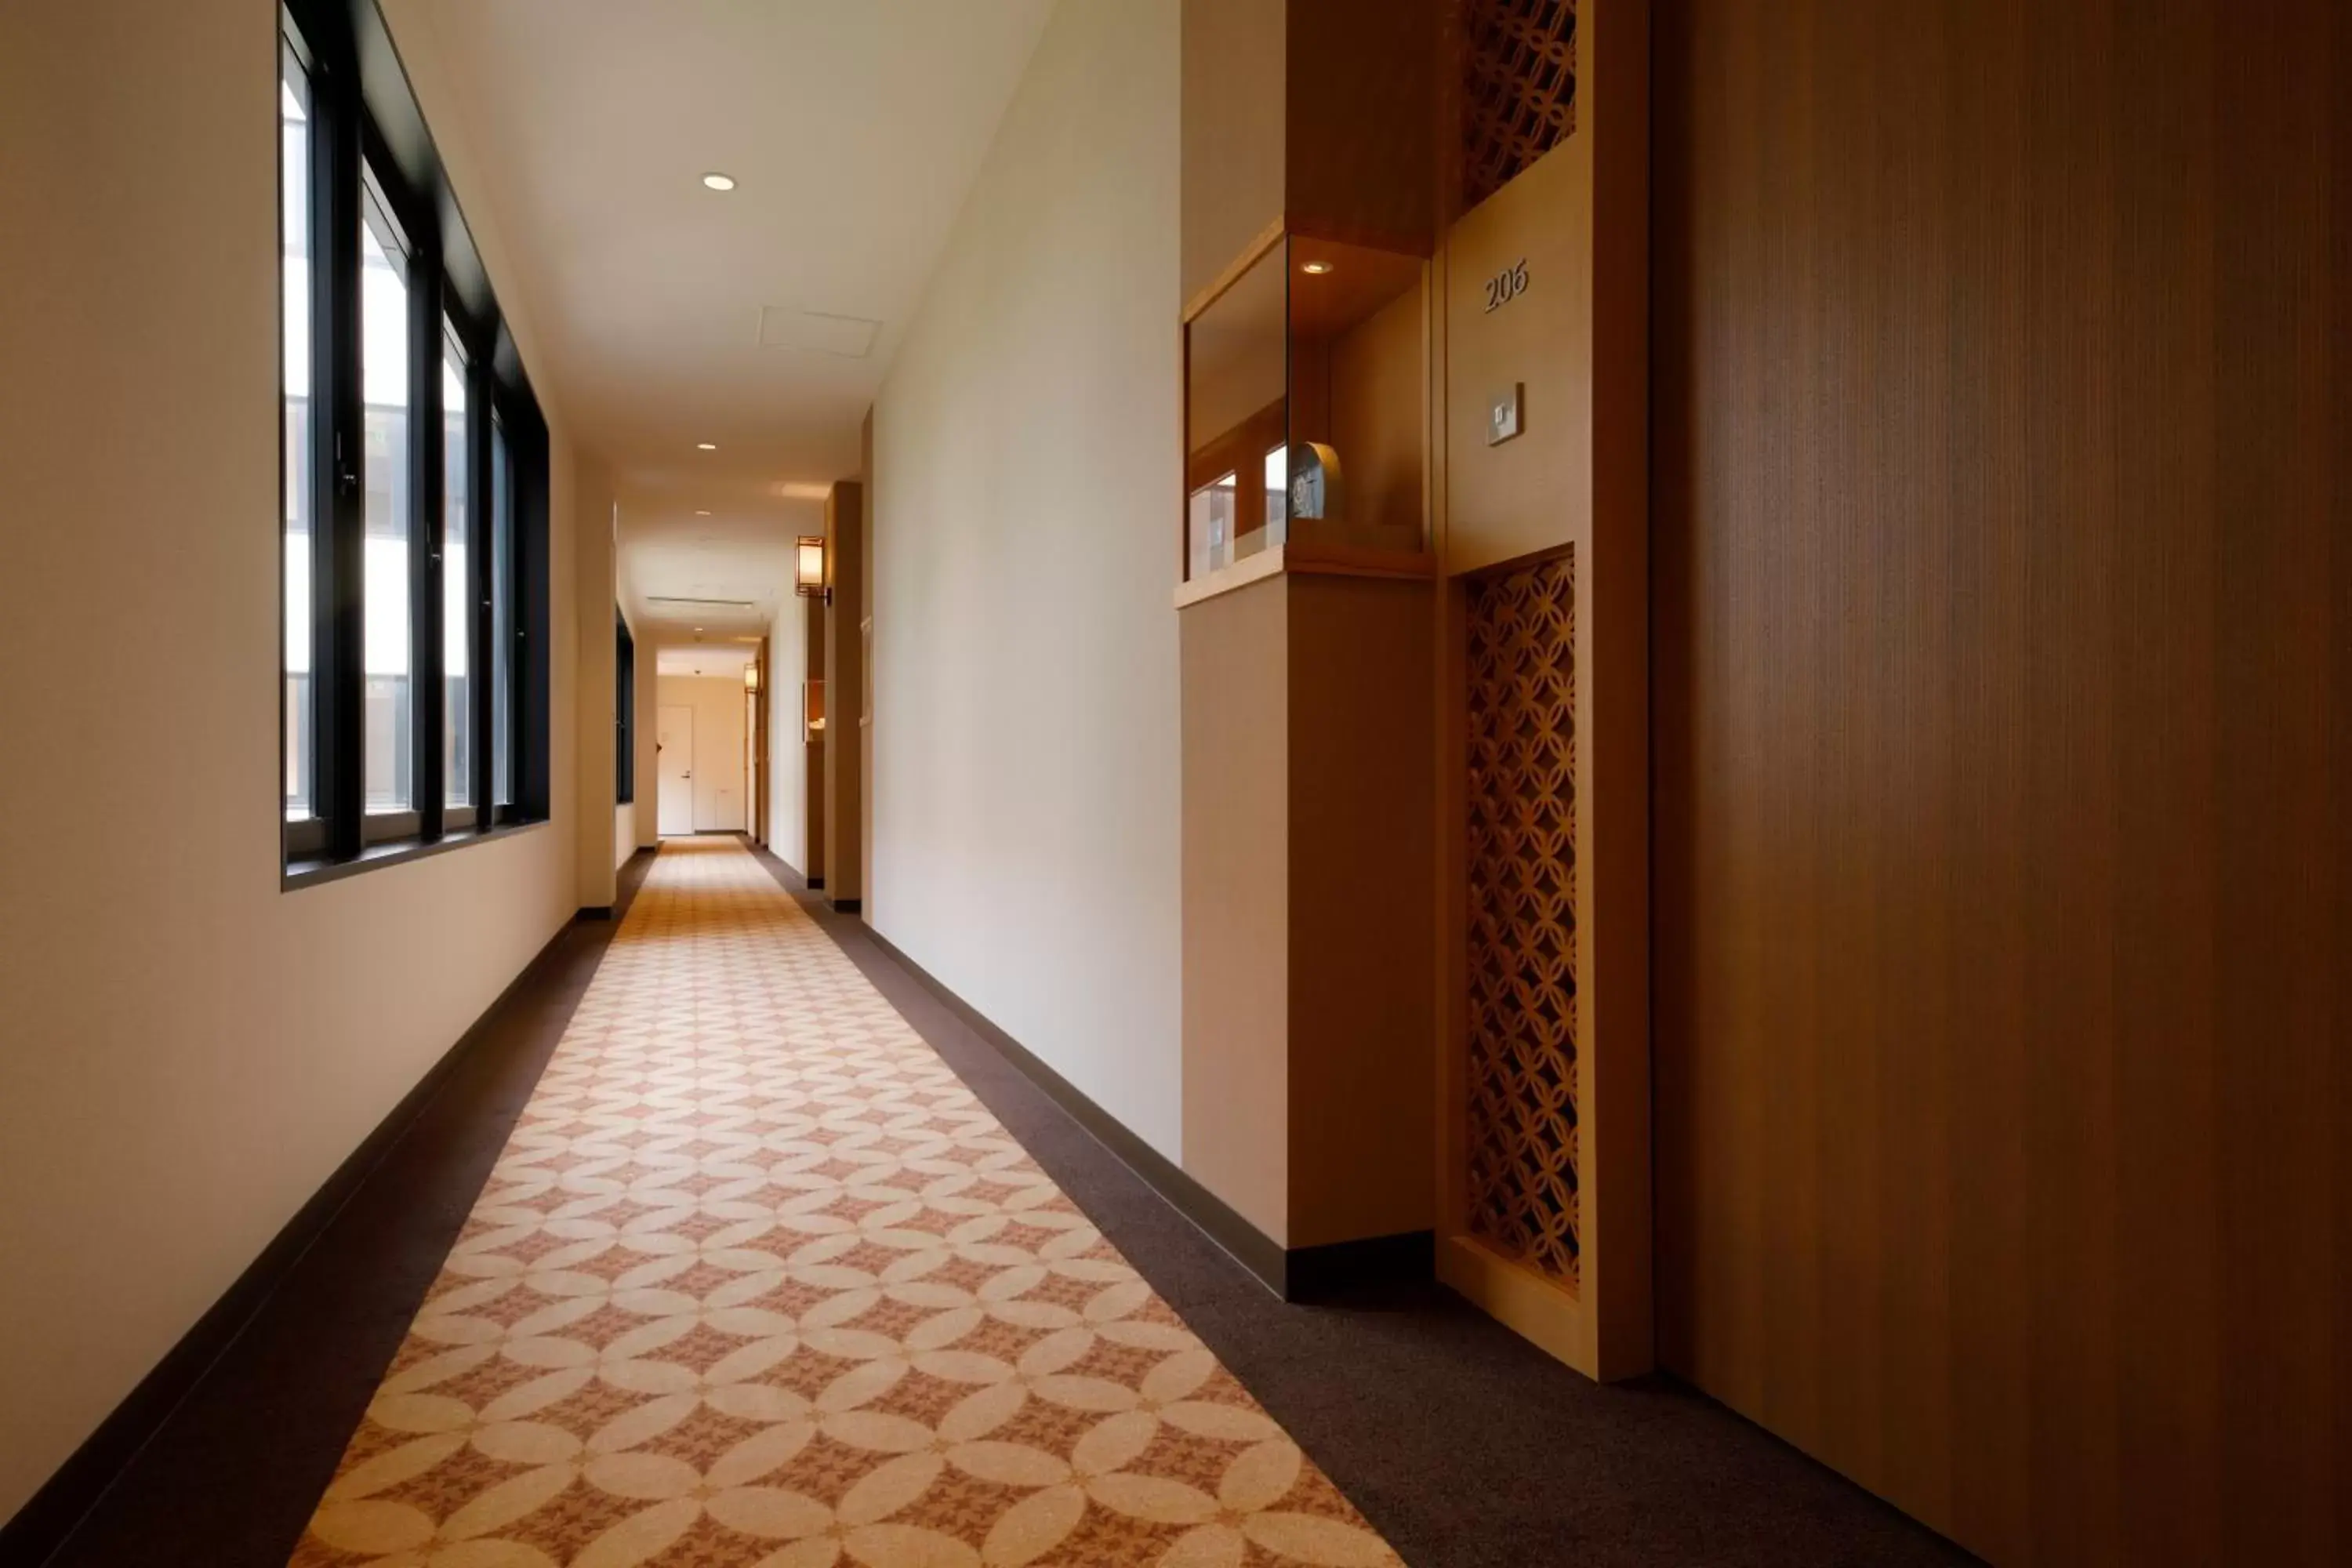 Area and facilities in Kanazawa Sainoniwa Hotel